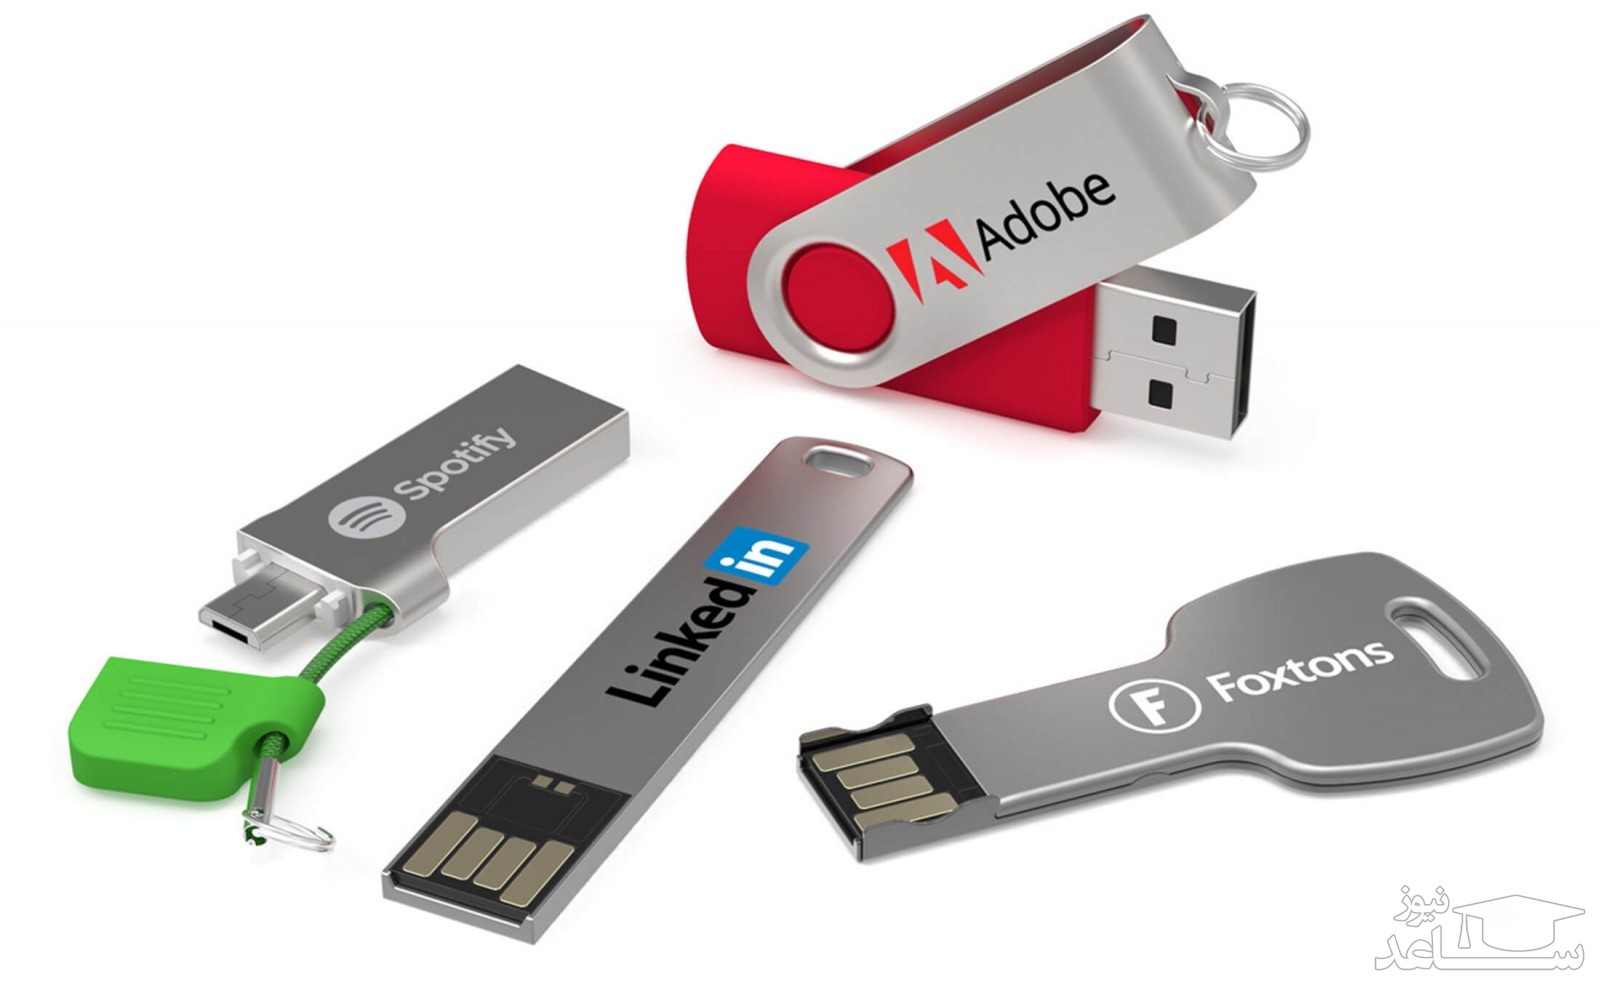 Сохранение данных с флешки. Флешка юсб 3.0. USB флеш-накопитель, USB карта памяти или флеш-карта. Флешка USB3.0. Юсб 3.0 флешка двухсторонняя.